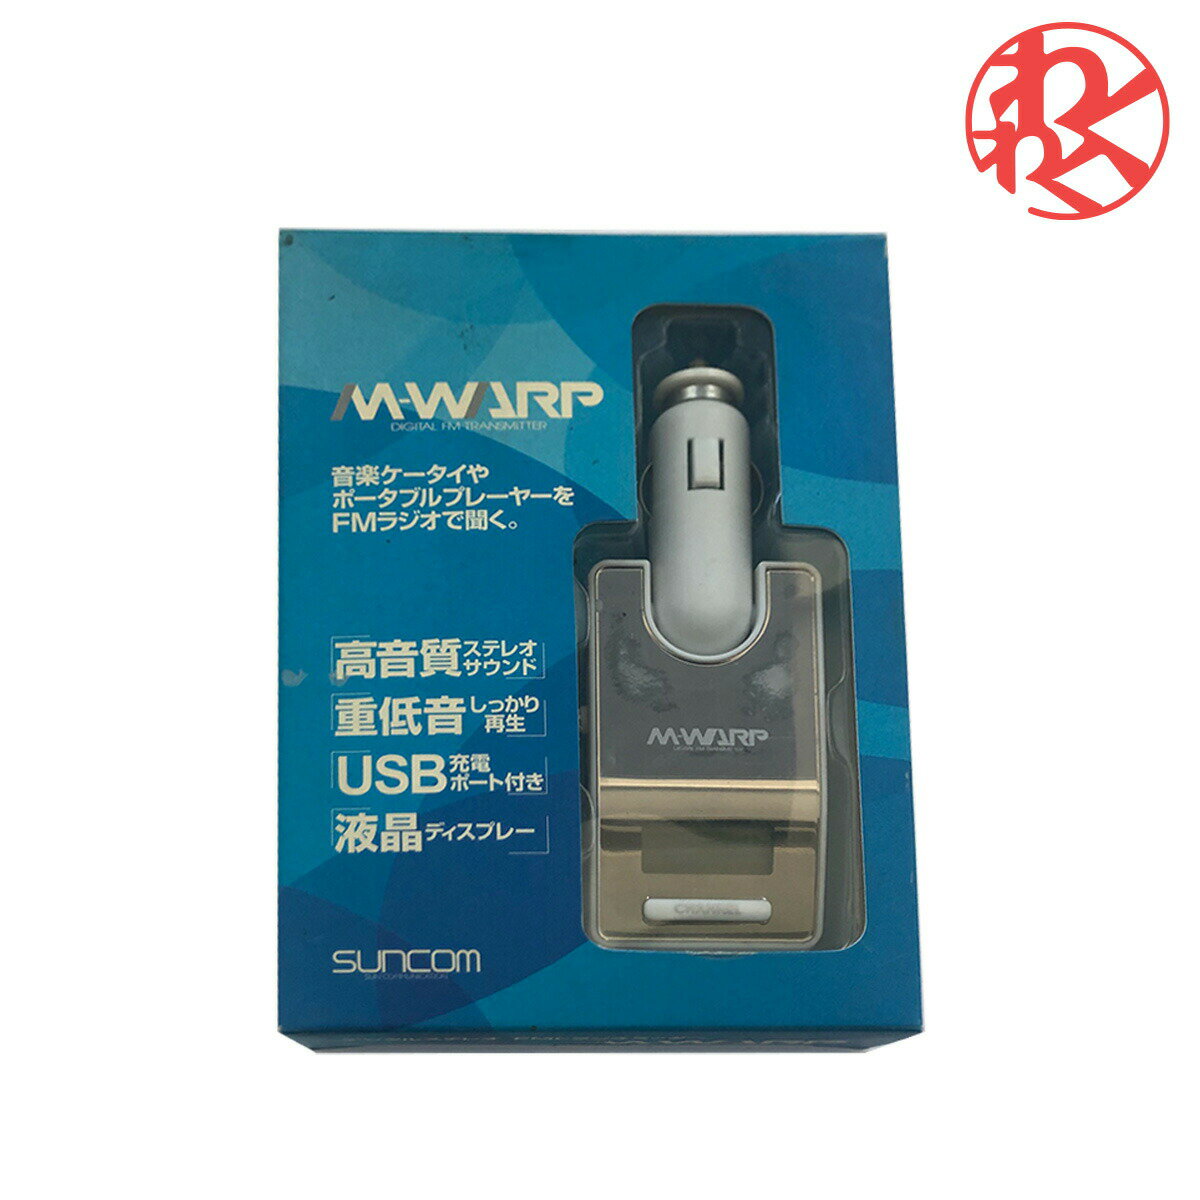 HPM-301W FMトランスミッター M301 ホワイト FMラジオ iPod iPhone オーディオプレーヤー MD 3.5ミニピンジャック マルチチャンネル 電池不要 M-WARP